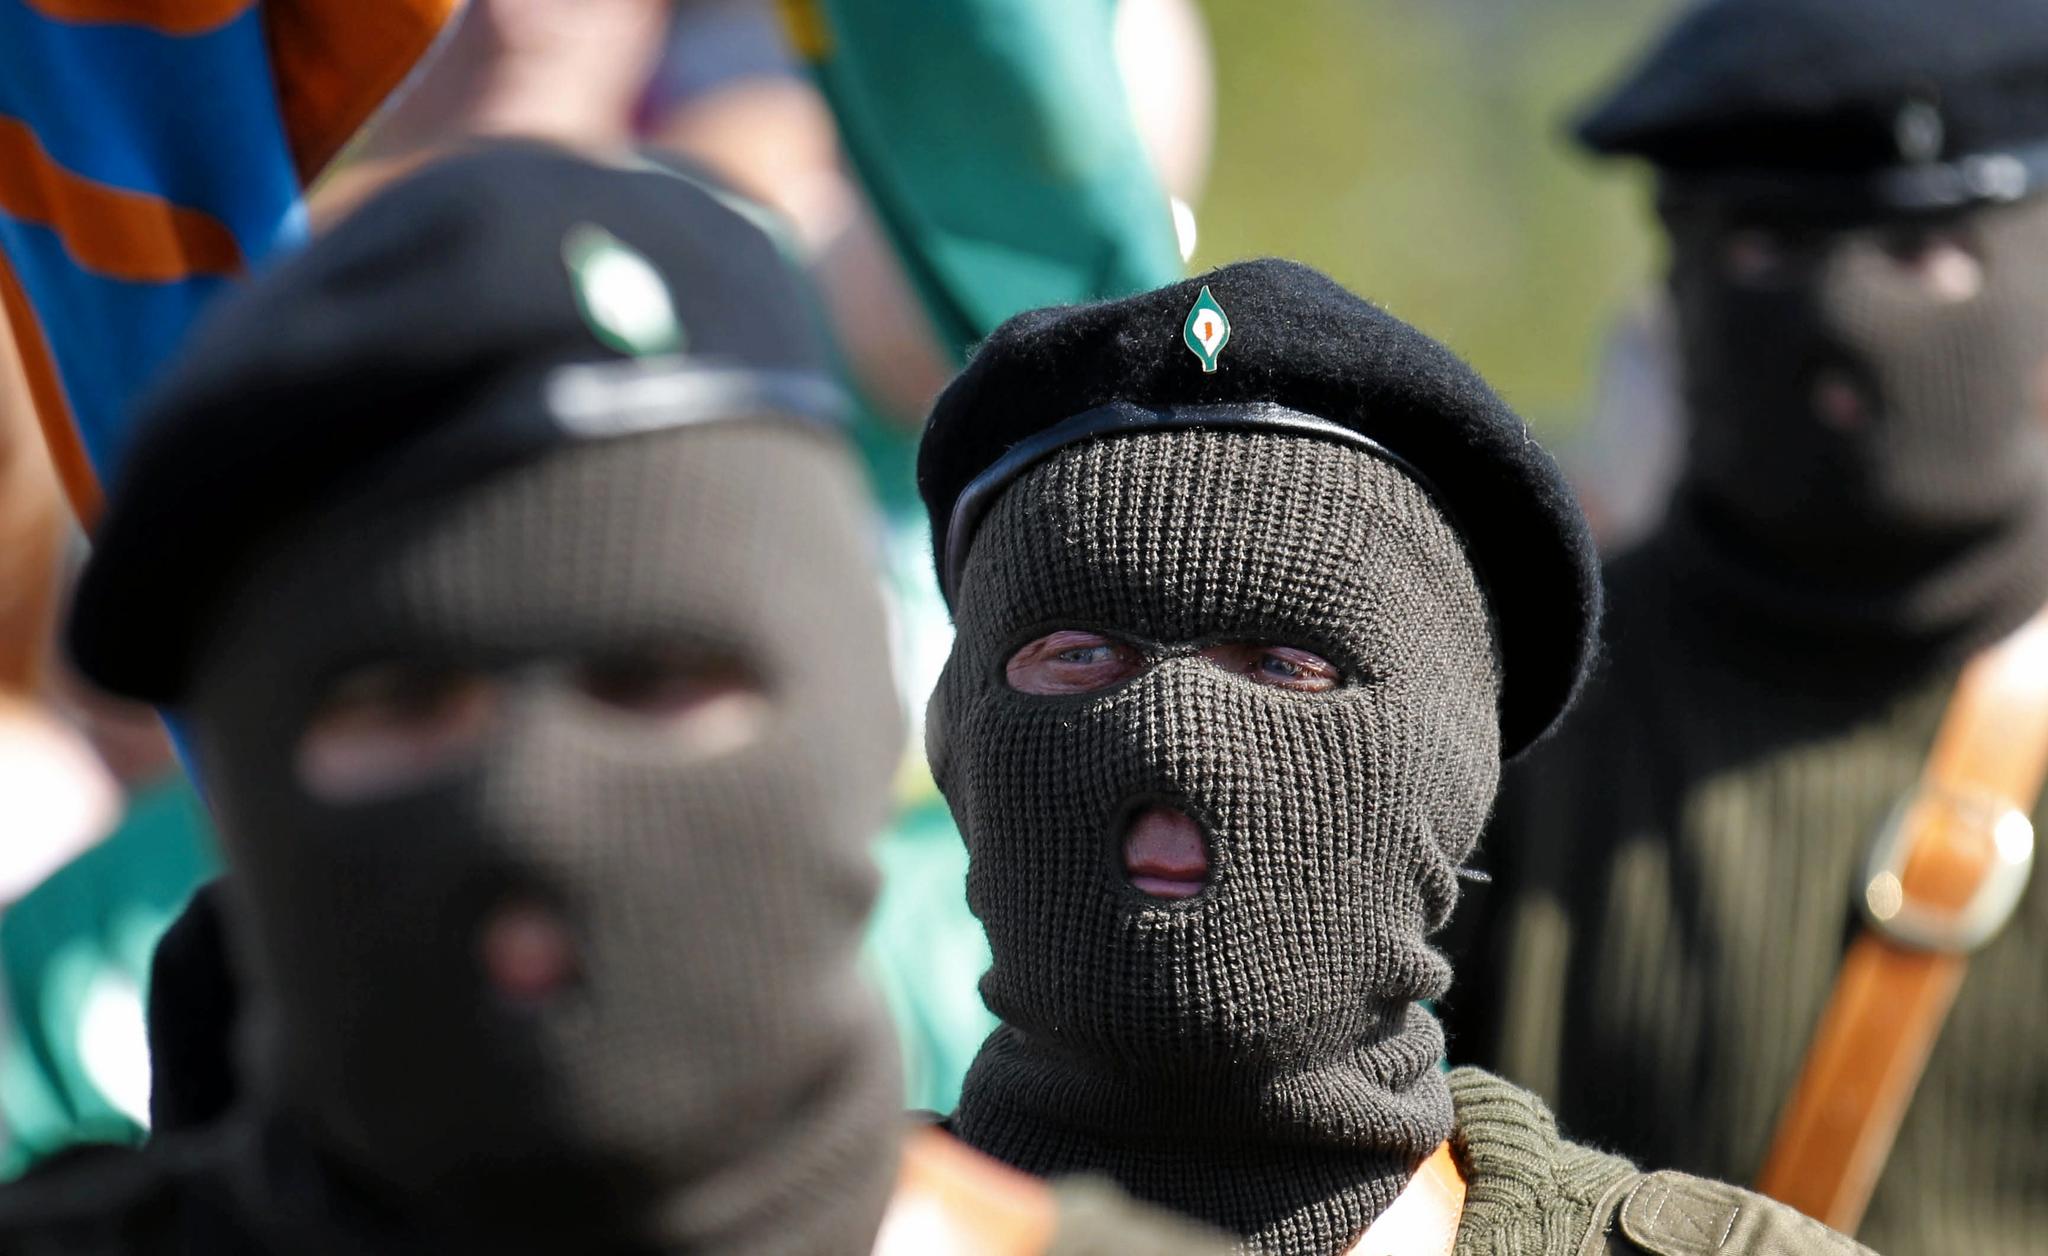 The Real IRA er en av gruppene som utgjør det nye IRA. Bildet er fra 2011, og viser medlemmer av The Real IRA på en minnemarkering for det seks dager lange Påskeopprøret mot det britiske styret i Irland i 1916.